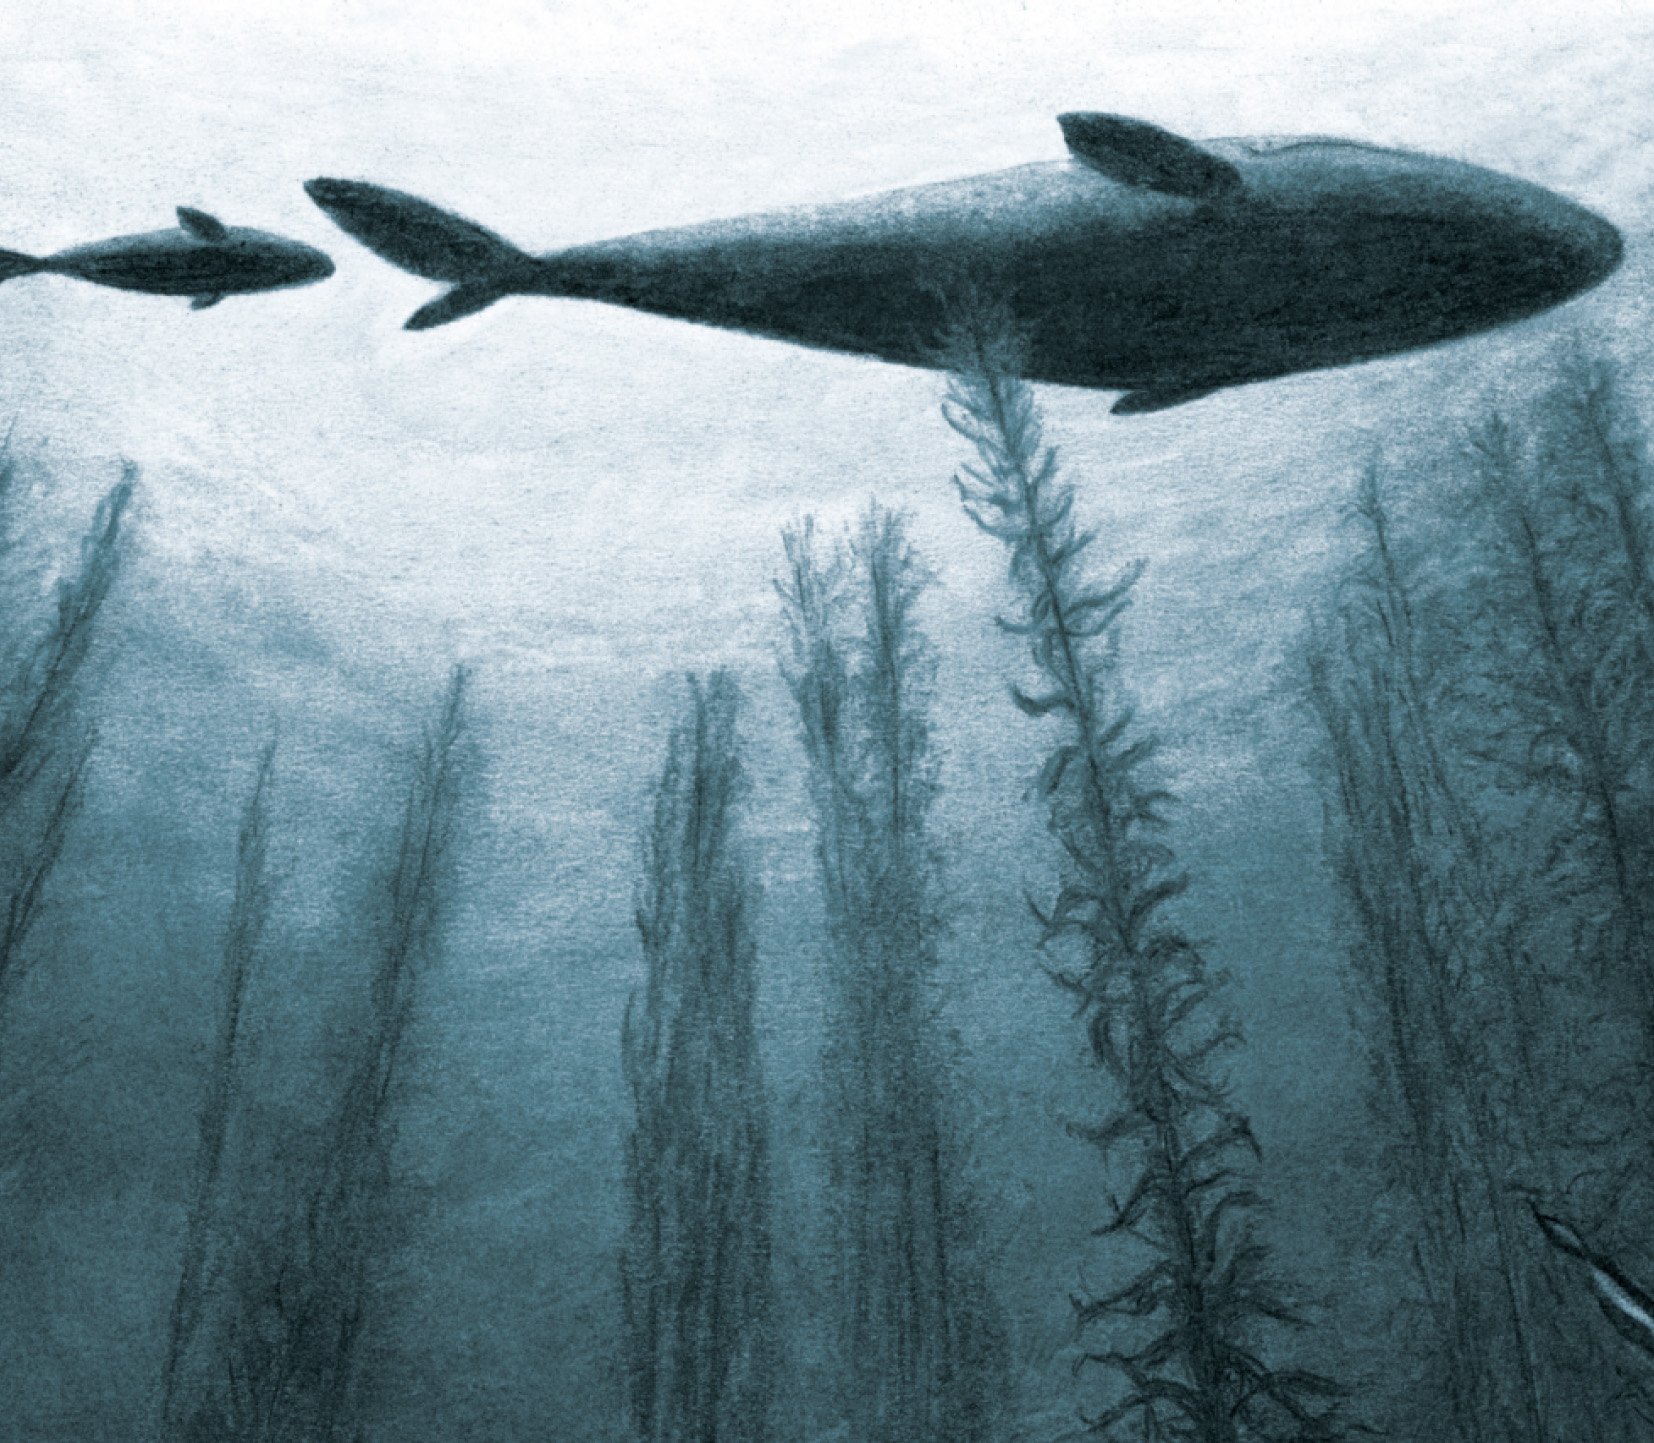 jo-weaver-whales-illustration.jpg